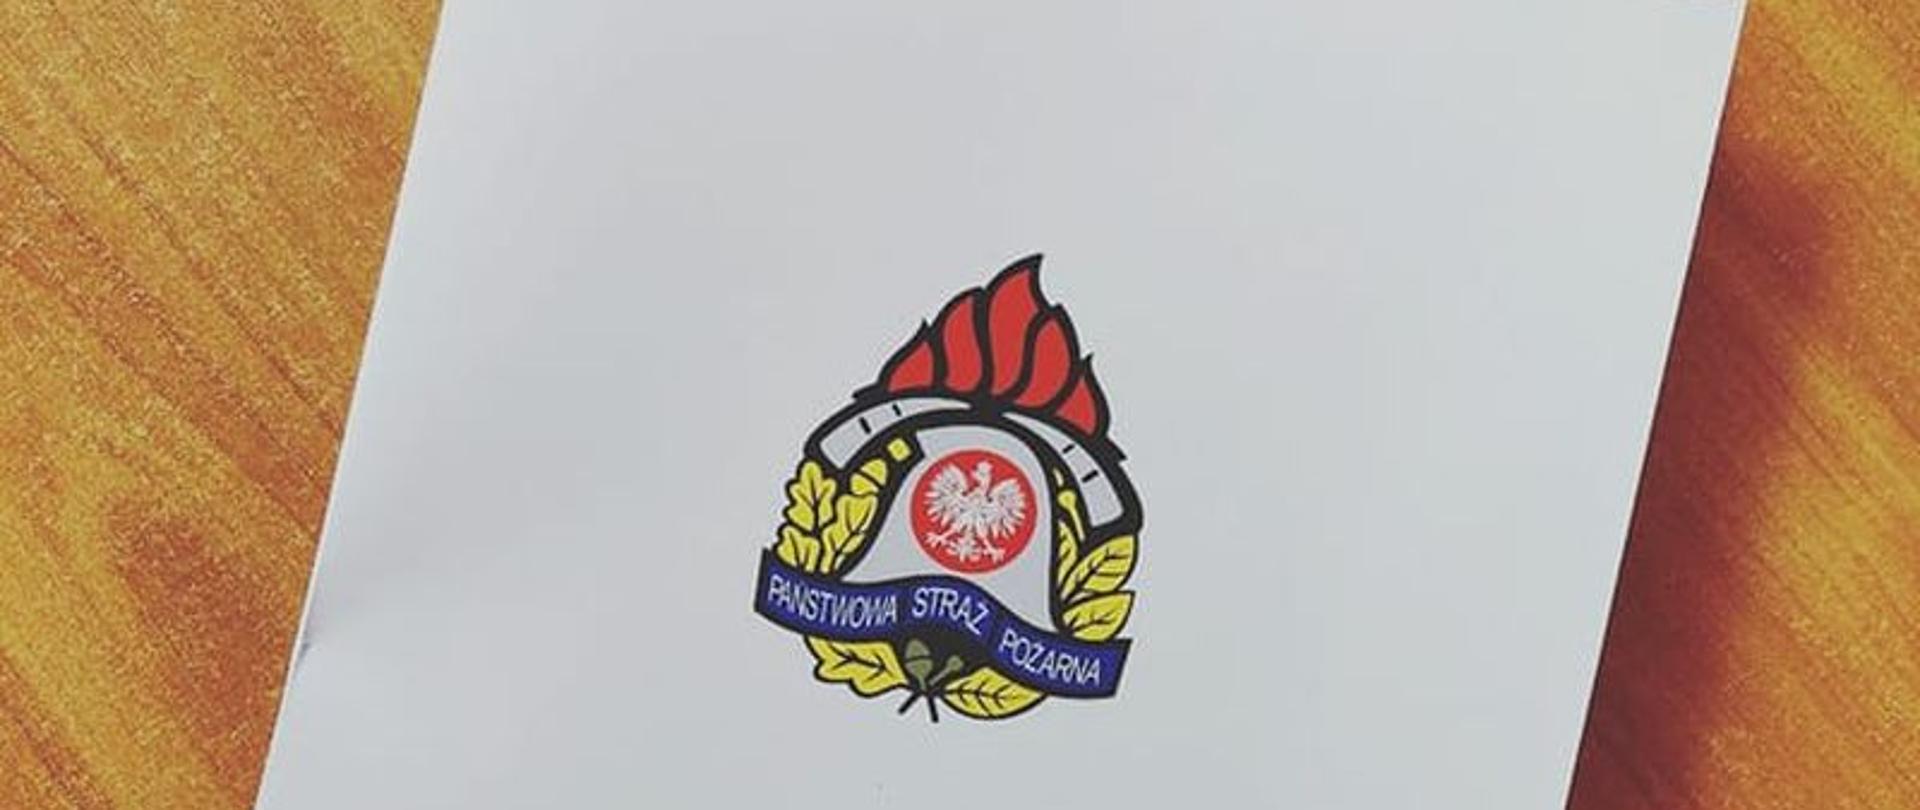 Zdjęcie przedstawia białą teczkę z logiem Państwowej Straży Pożarnej i podpisem Komenda Powiatowa Państwowej Straży Pożarnej w Białogardzie.Teczka leży na biurku.